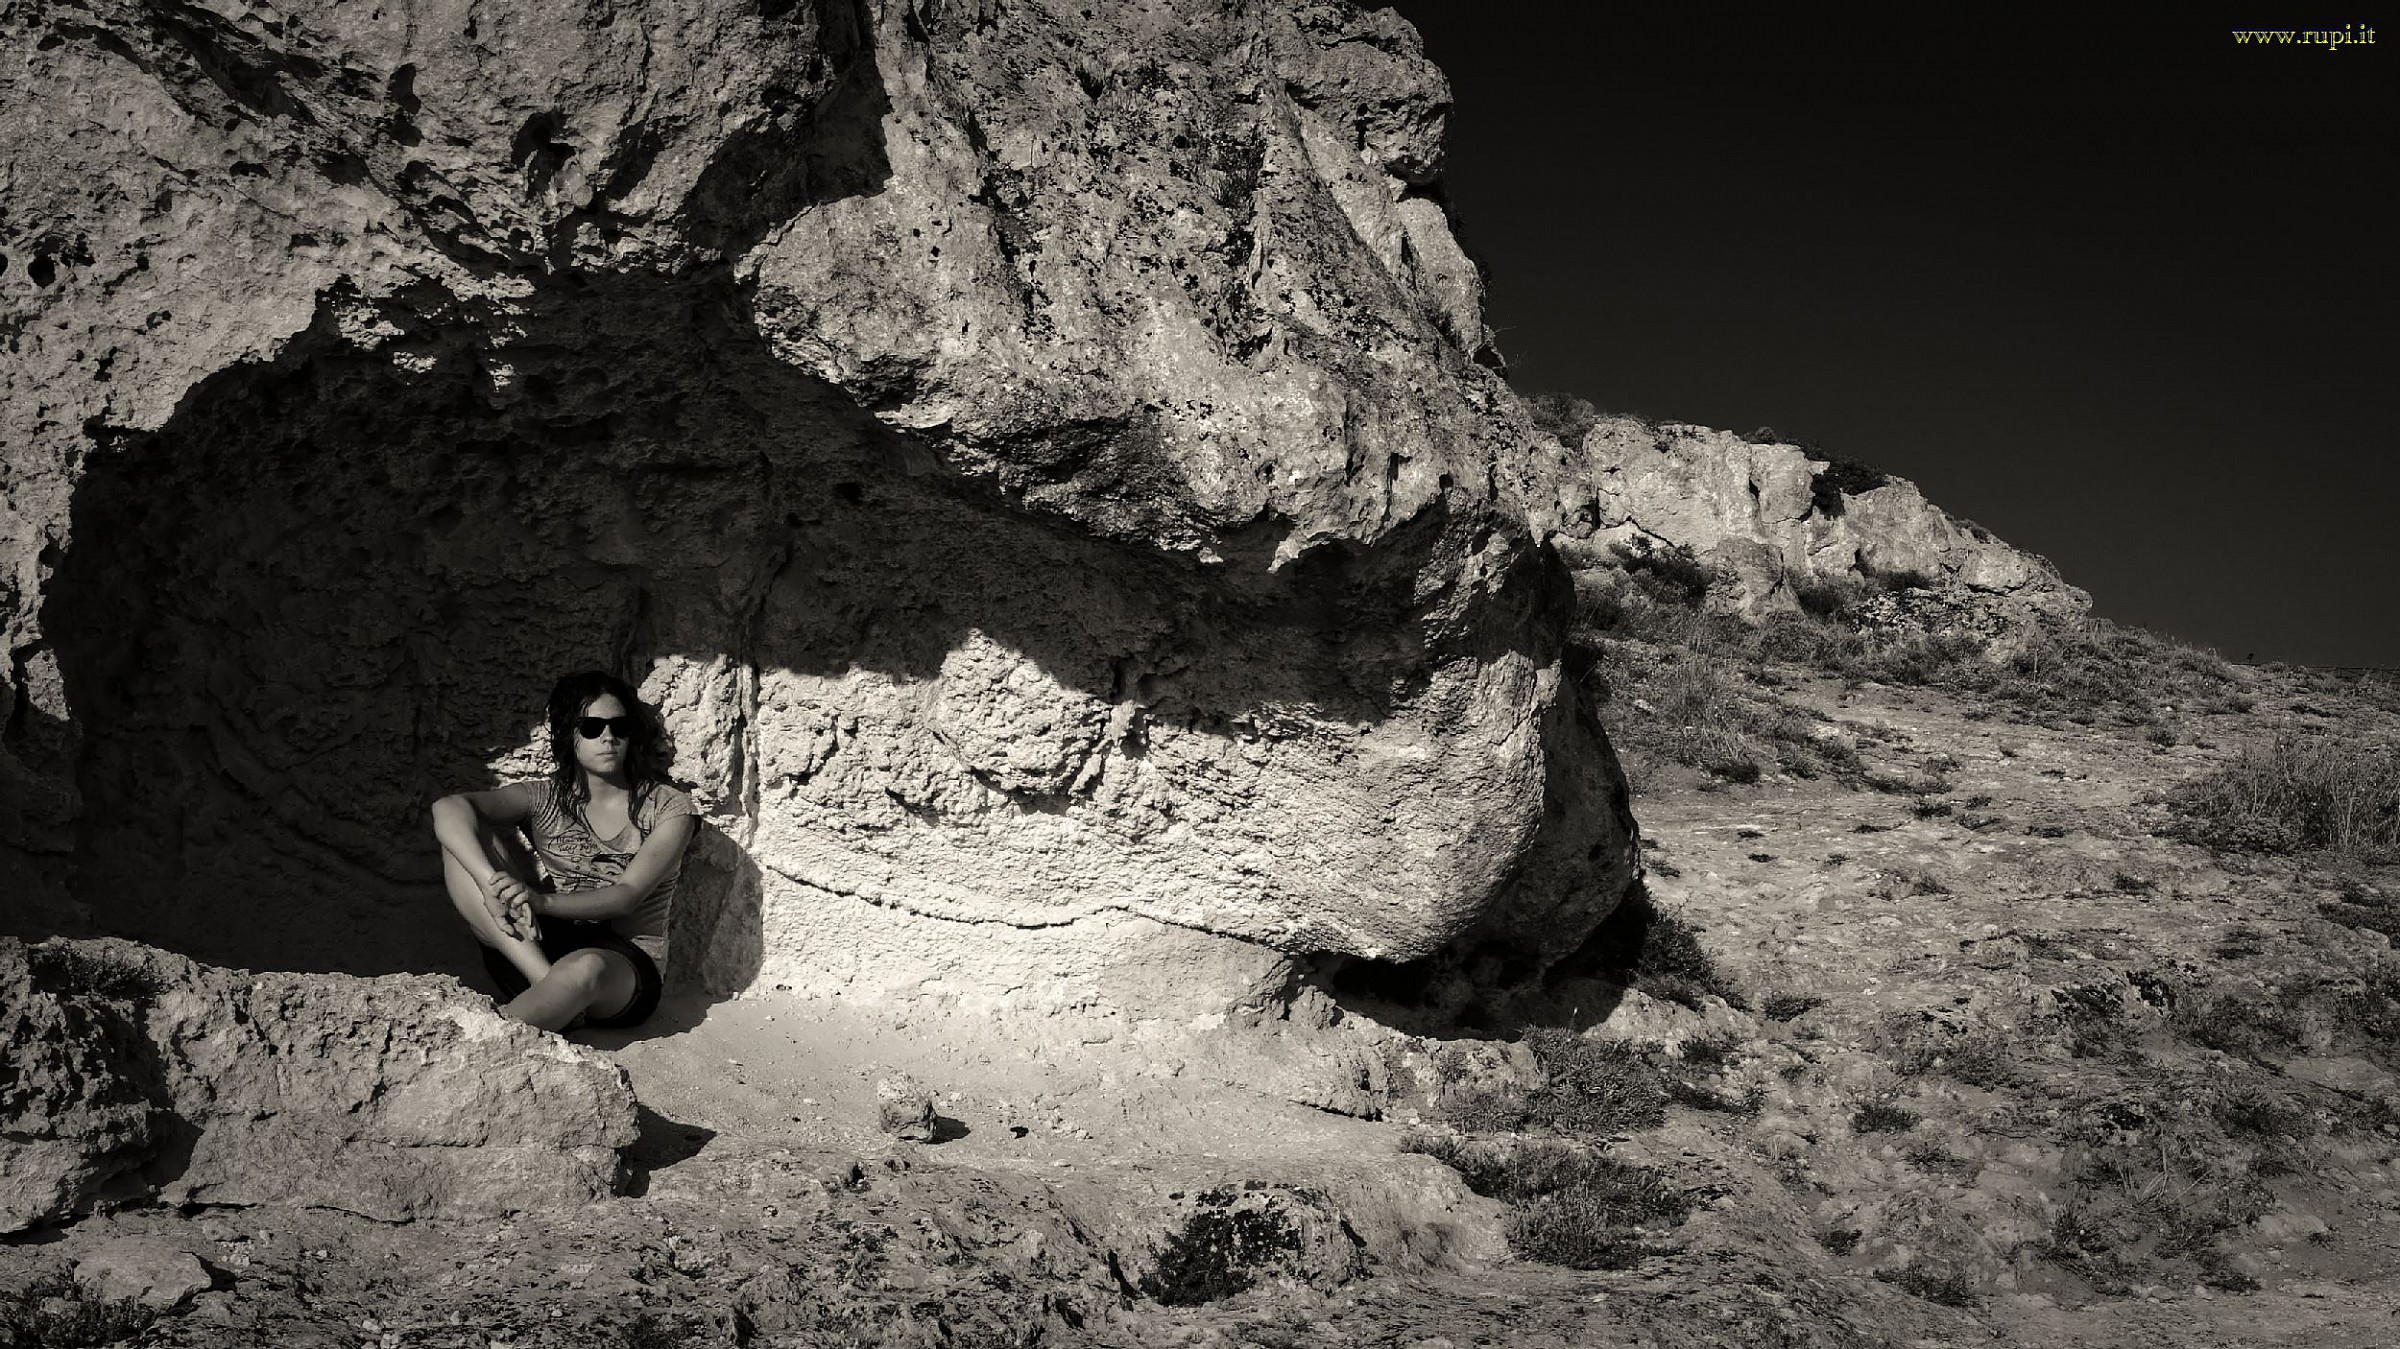 Nelle fauci della roccia: contemplando Matera...